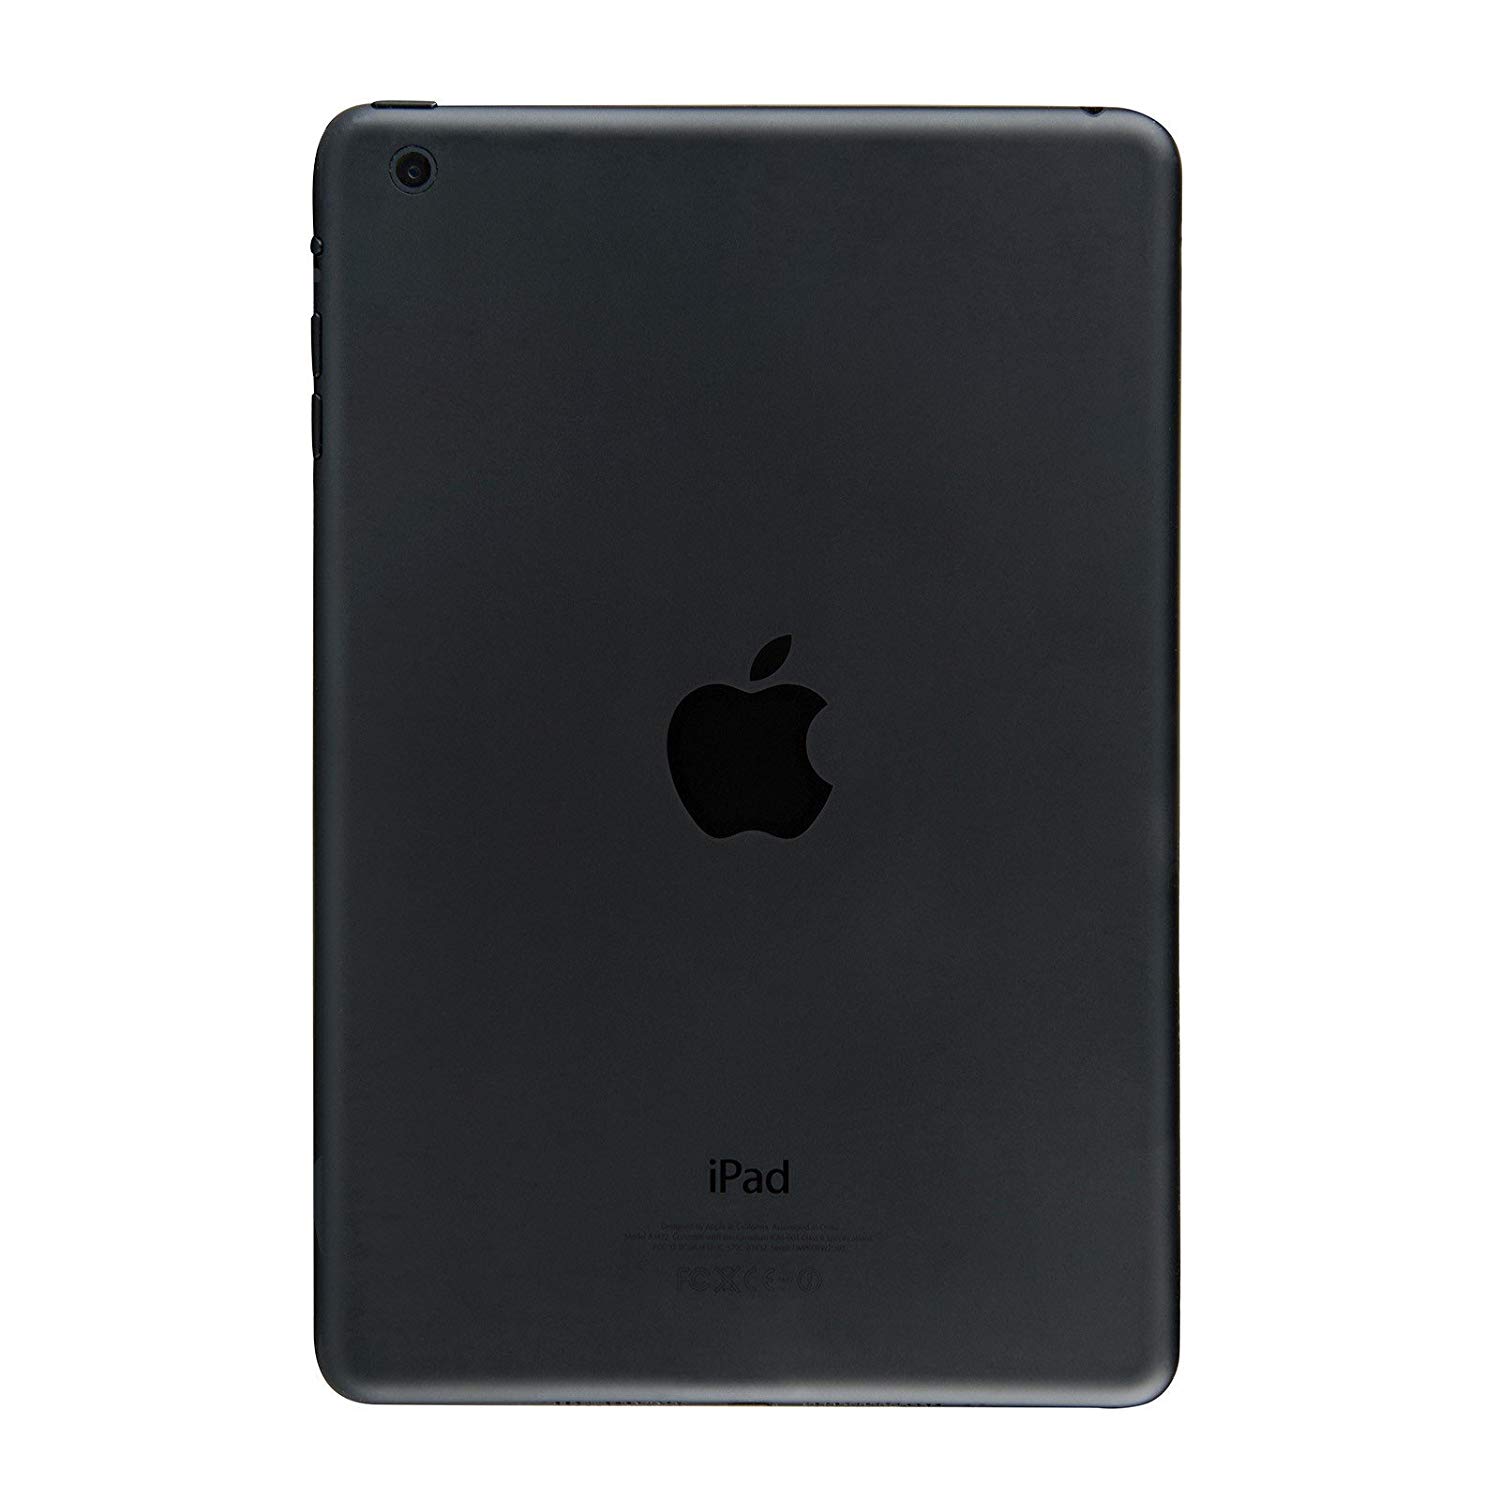 Apple ipad 16gb wifi. IPAD Mini a1432 16gb. IPAD Mini WIFI 16gb. IPAD Mini 1 a1432. A1432 IPAD Mini 2.